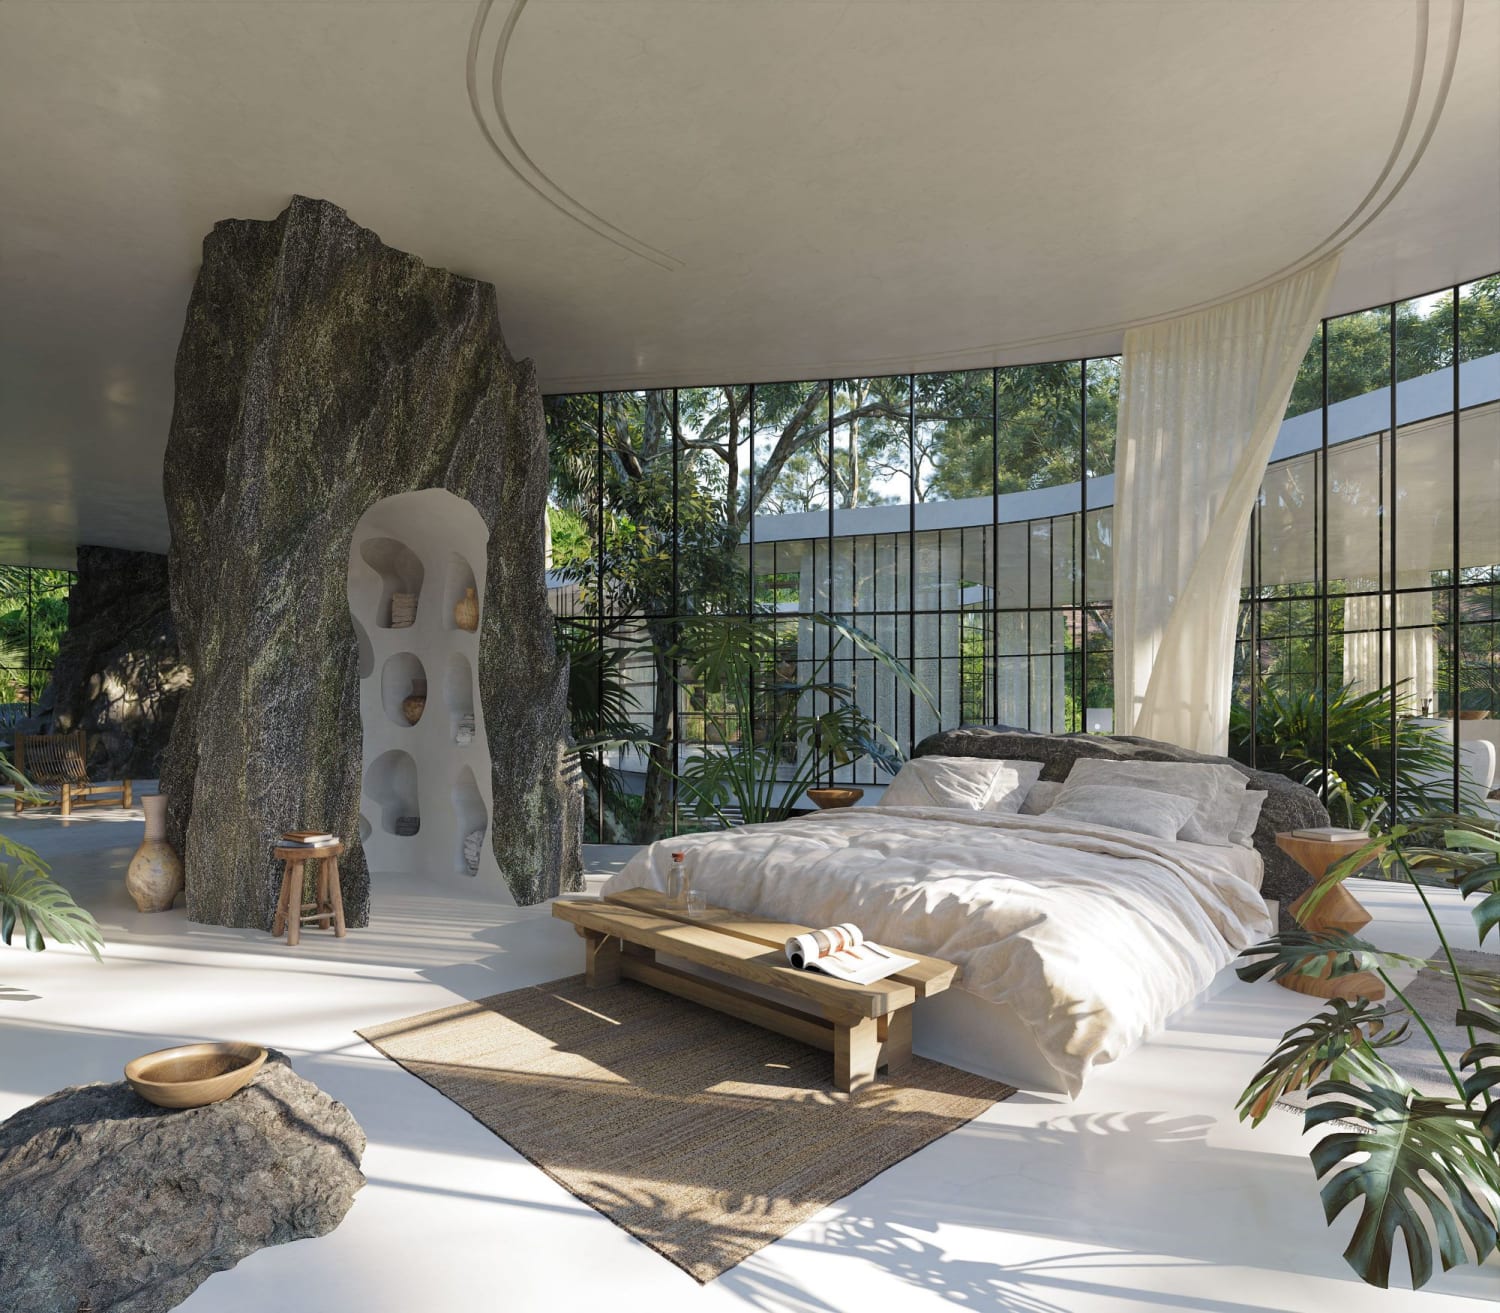 Une maison de verre design dans la nature brésilienne